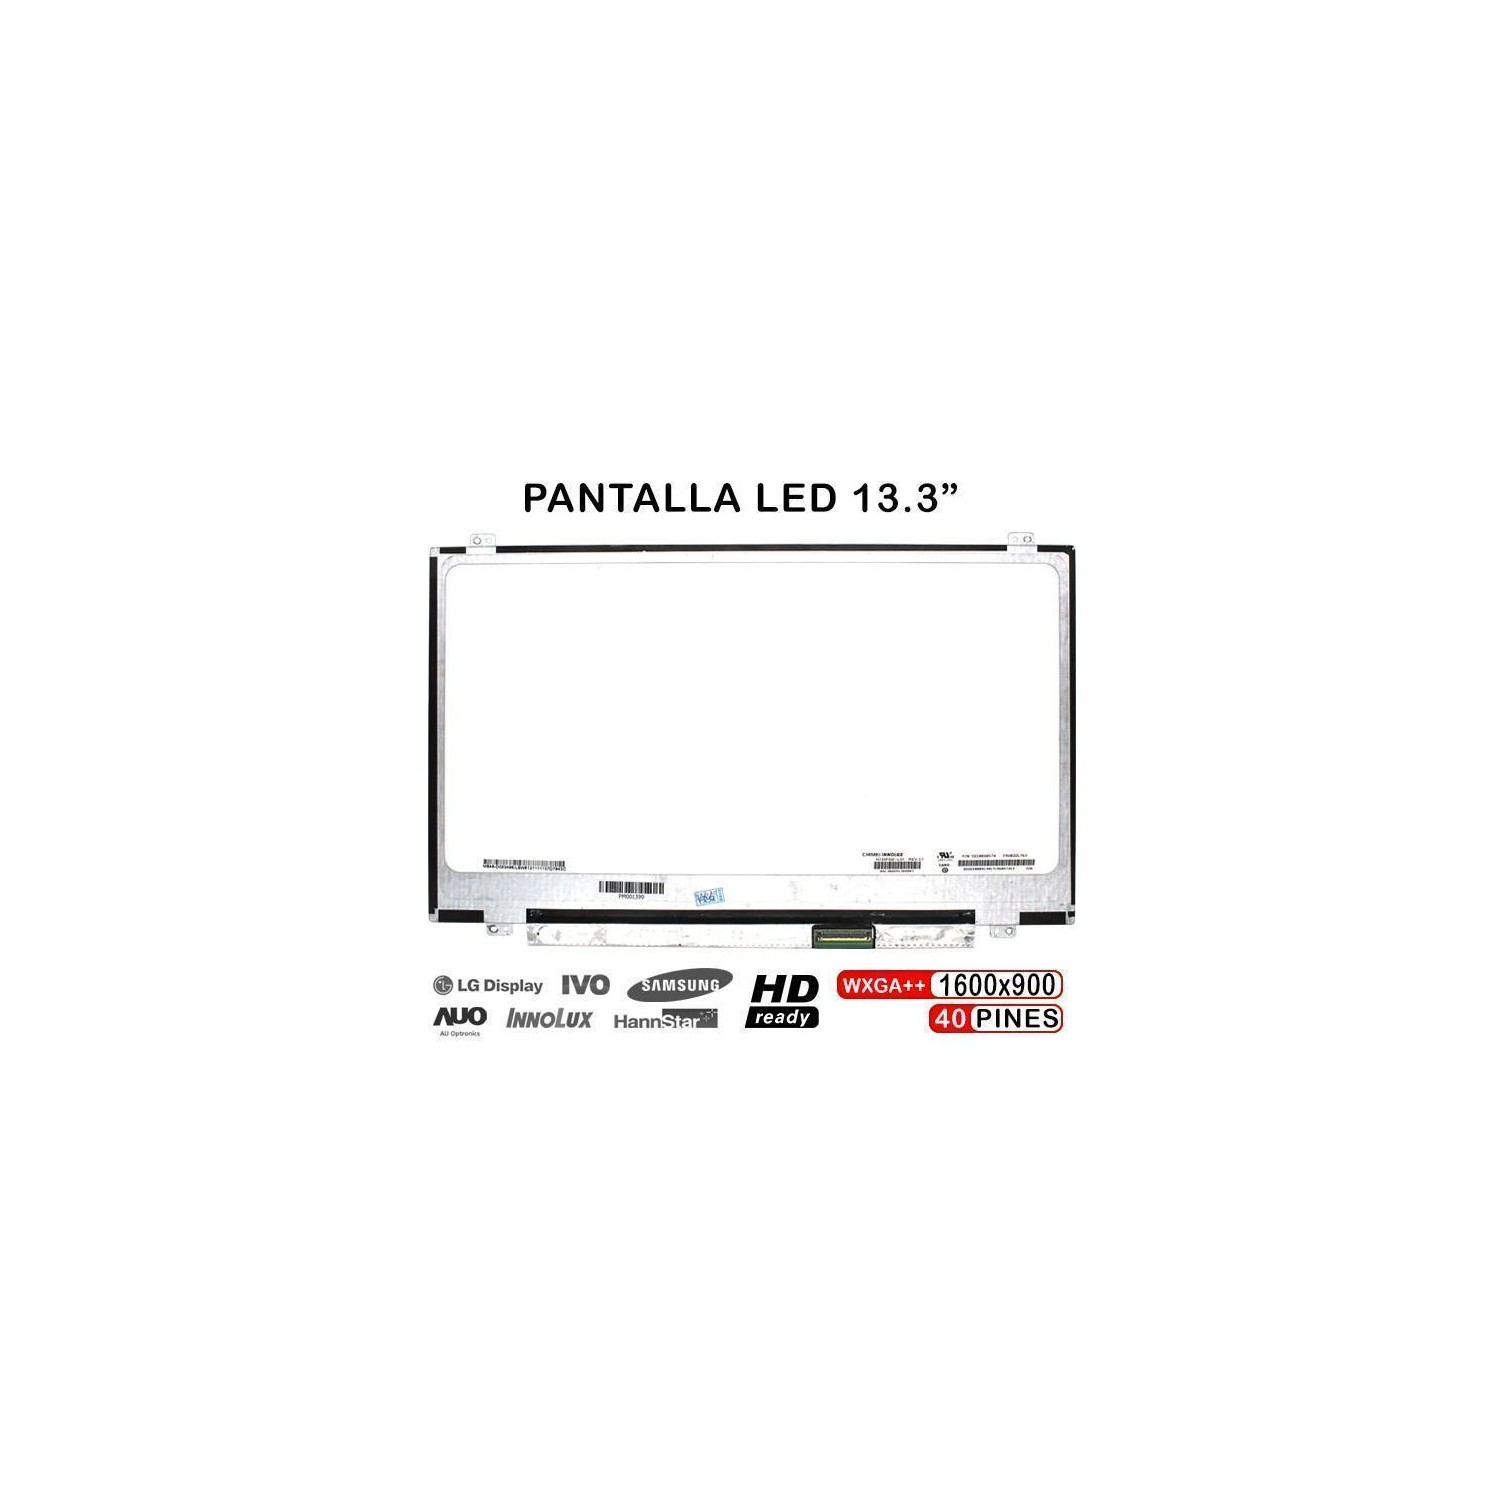 PANTALLA LED DE 13.3" PARA PORTÁTIL N133FGE-L31